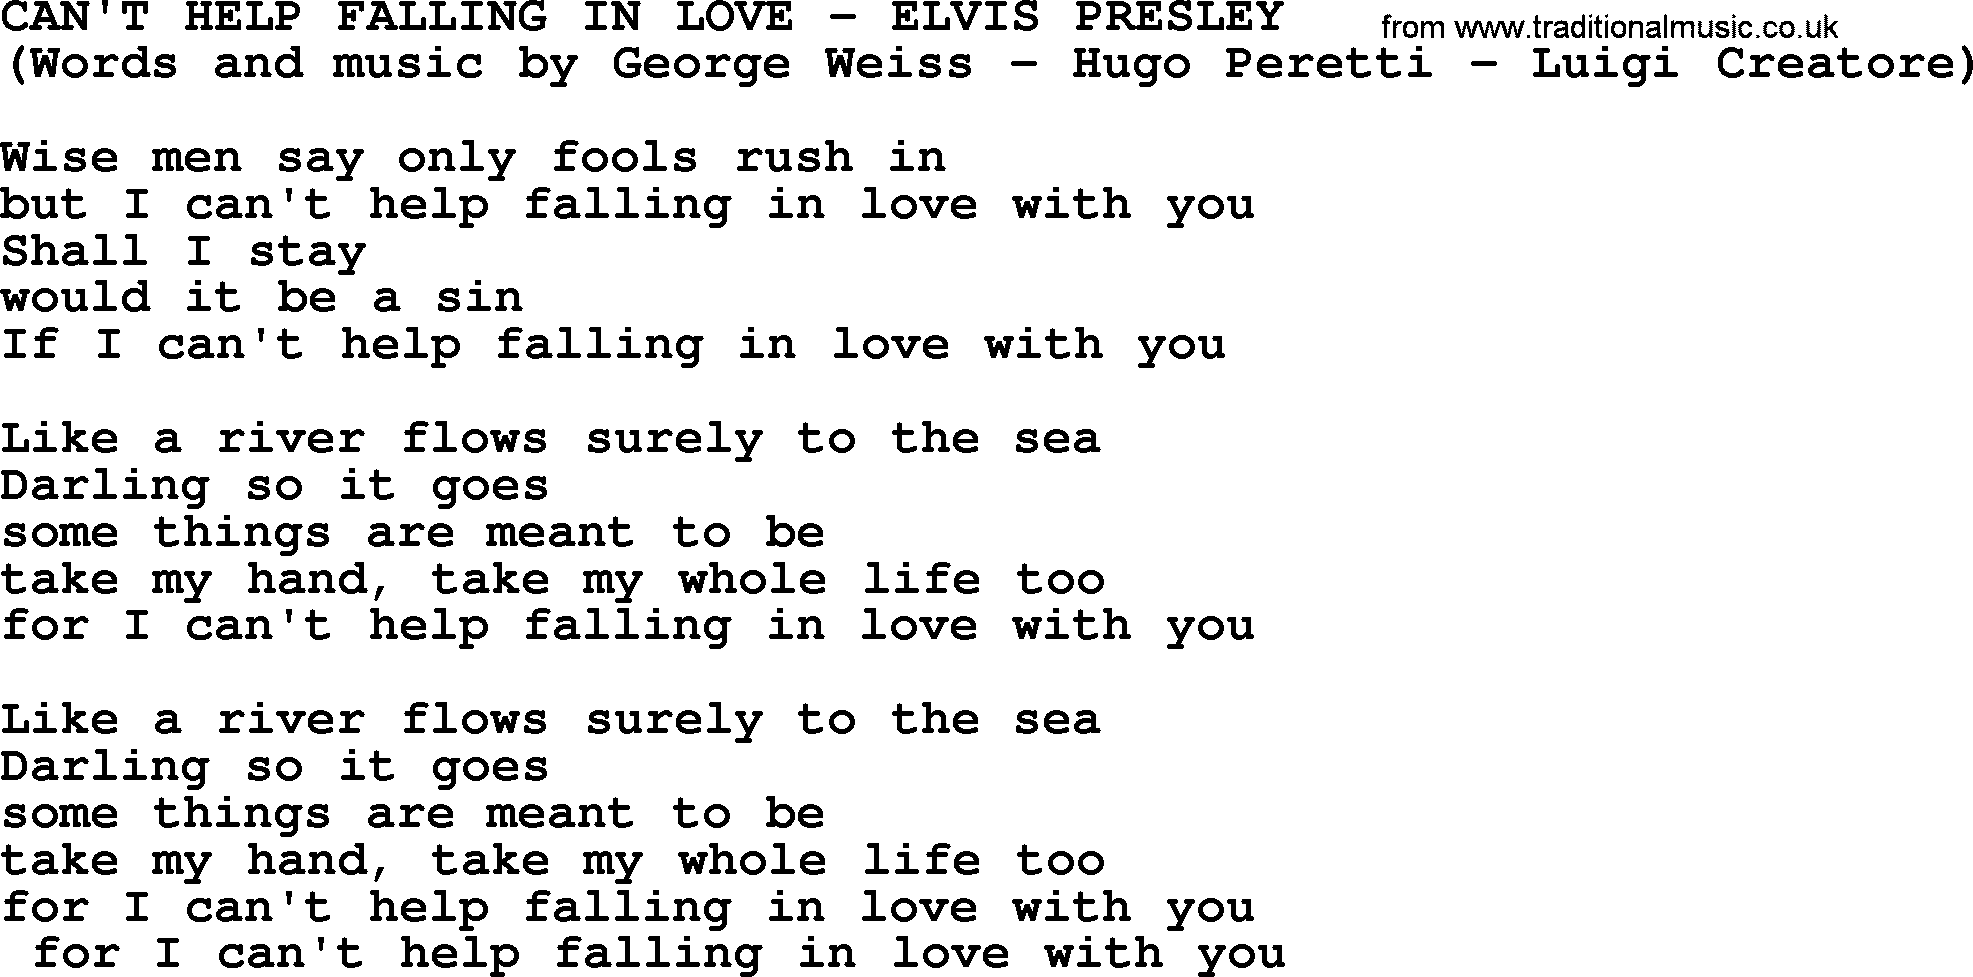 Elvis Presley song: Can't Help Falling In Love lyrics